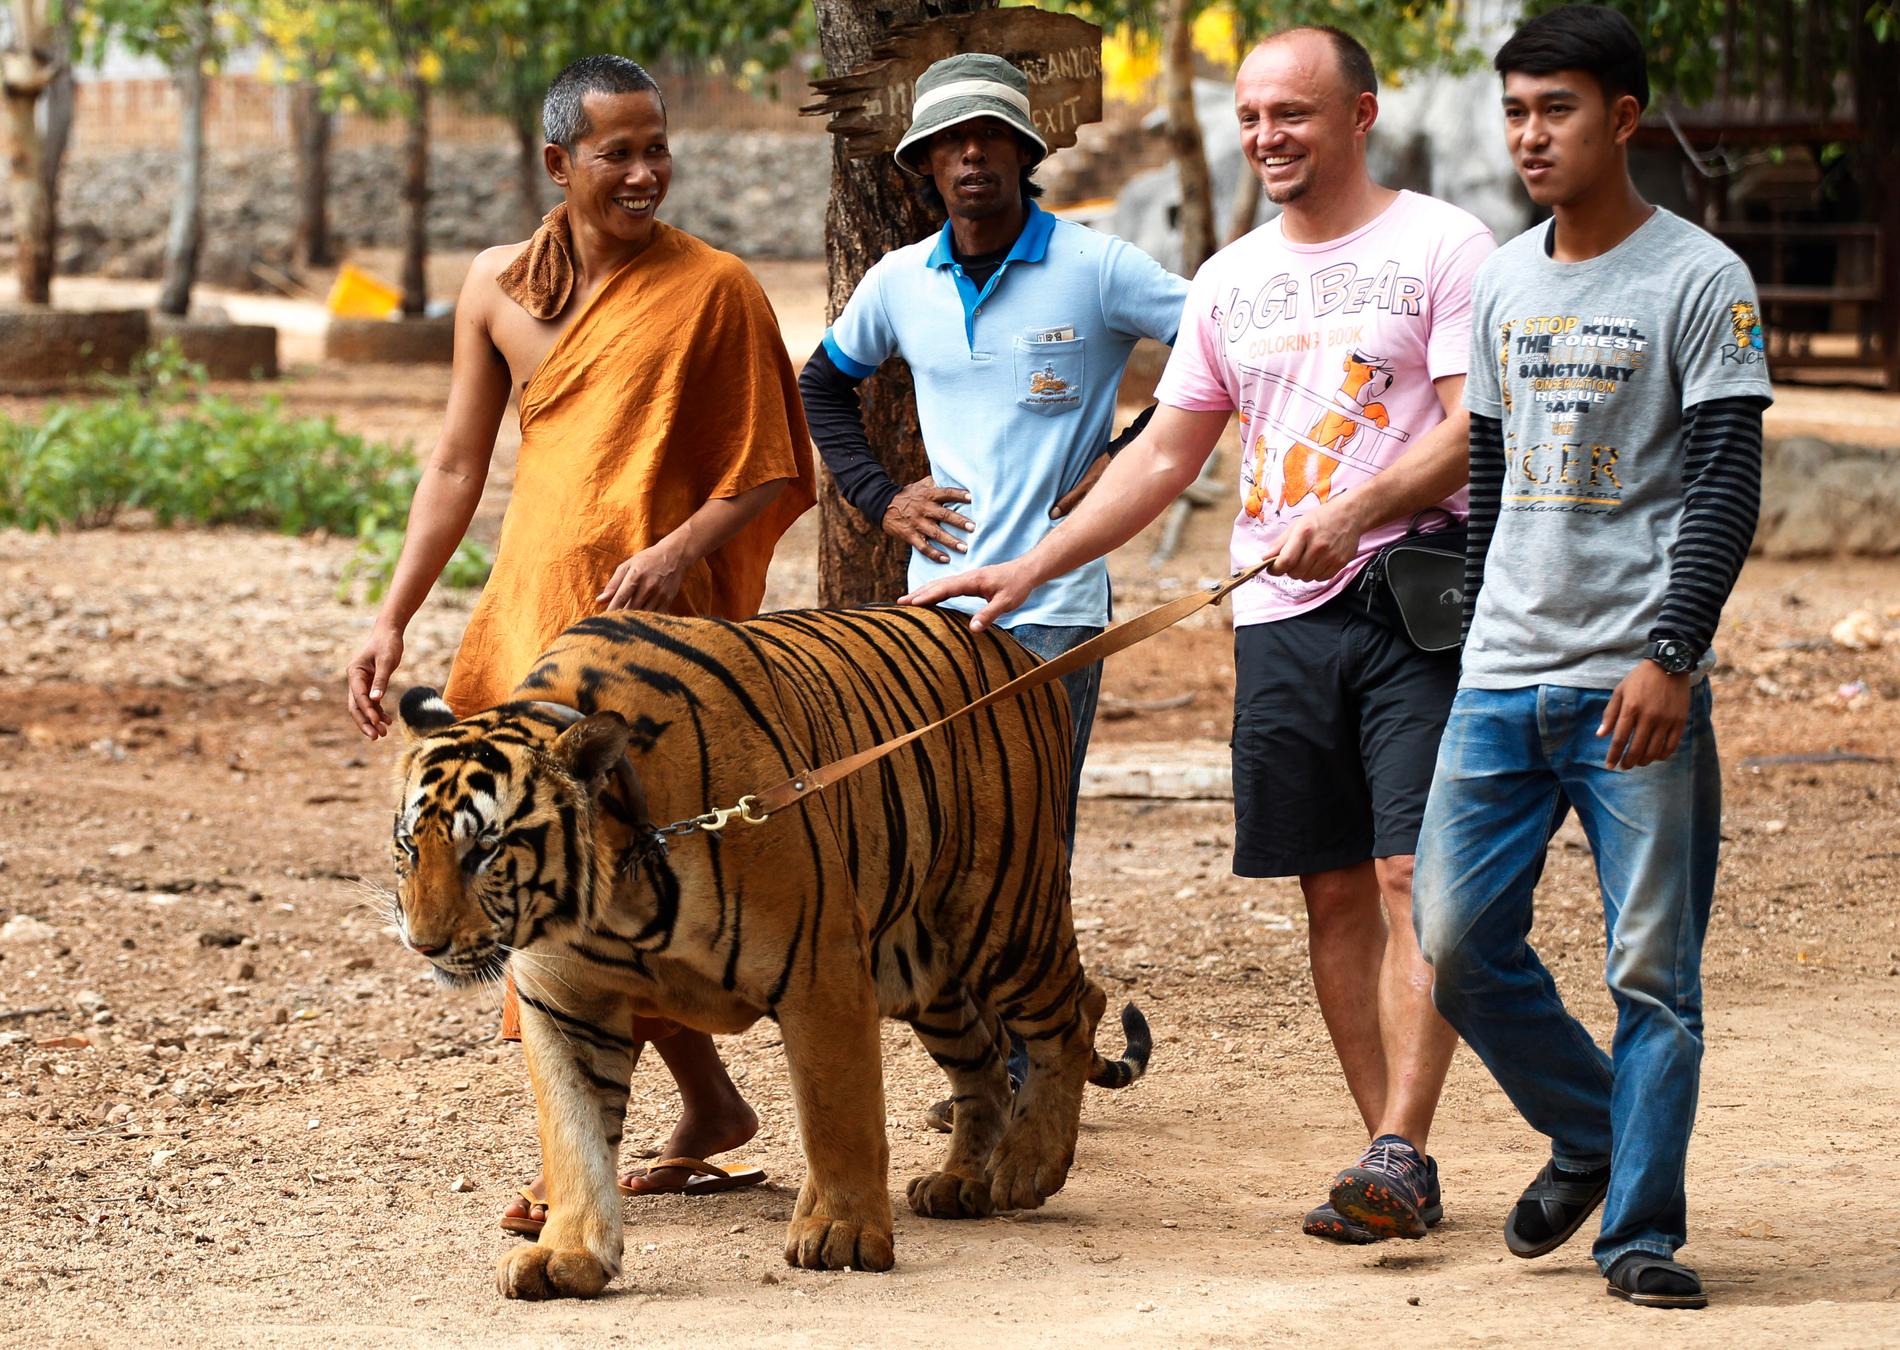 Turister tilläts promenera en tiger i koppel på buddhisttemplet, som marknadsförde sin verksamhet som en "fristad" för tigrar. Arkivbild.